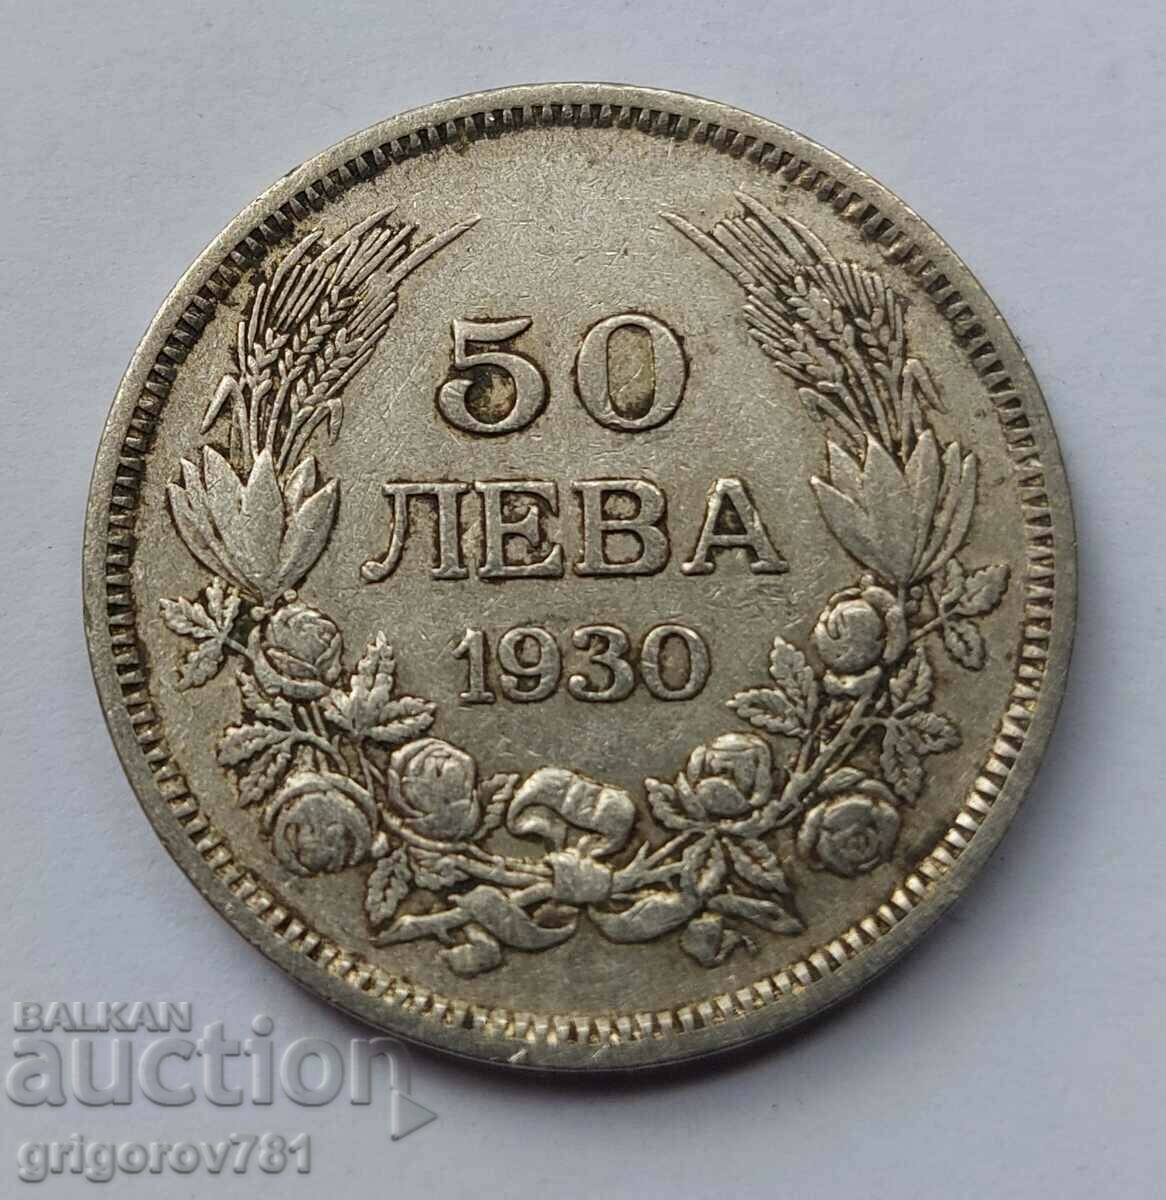 Ασήμι 50 λέβα Βουλγαρία 1930 - ασημένιο νόμισμα #58